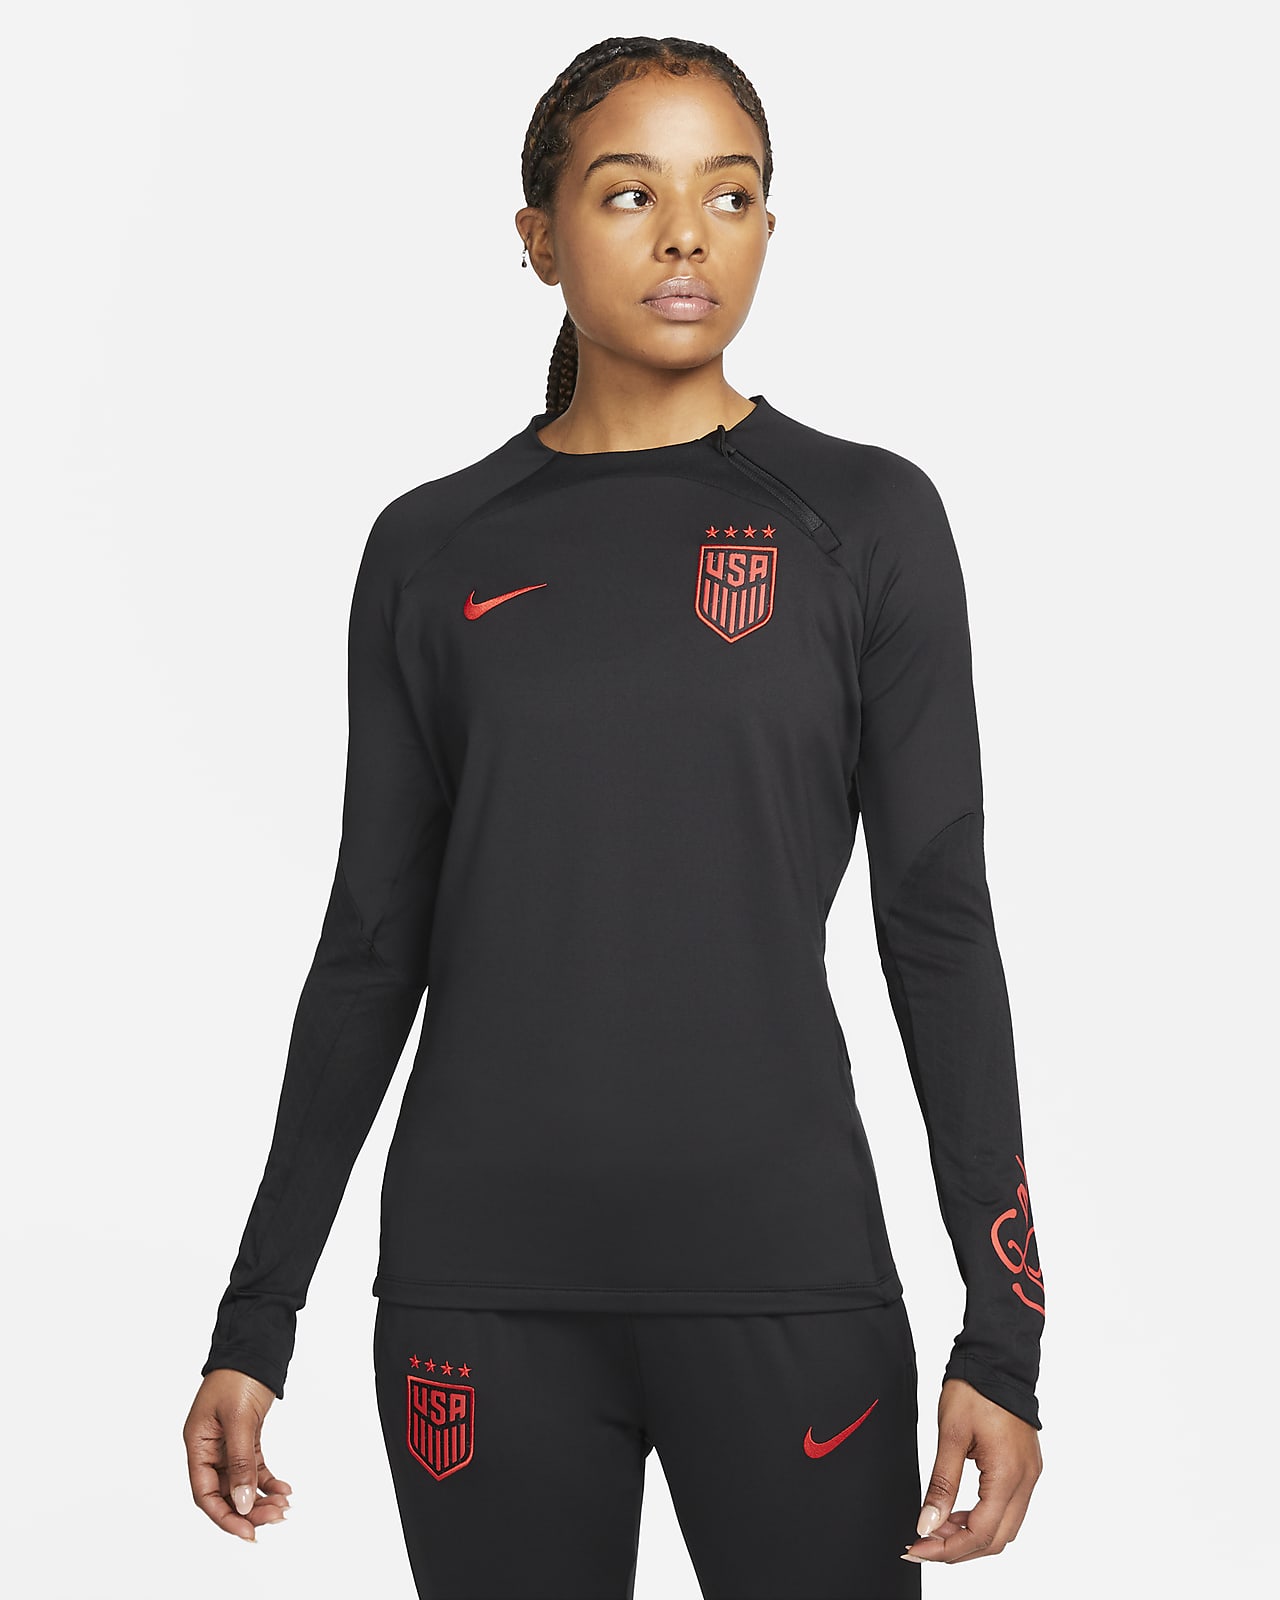 U.S. Strike Women's Nike Knit Soccer Top.